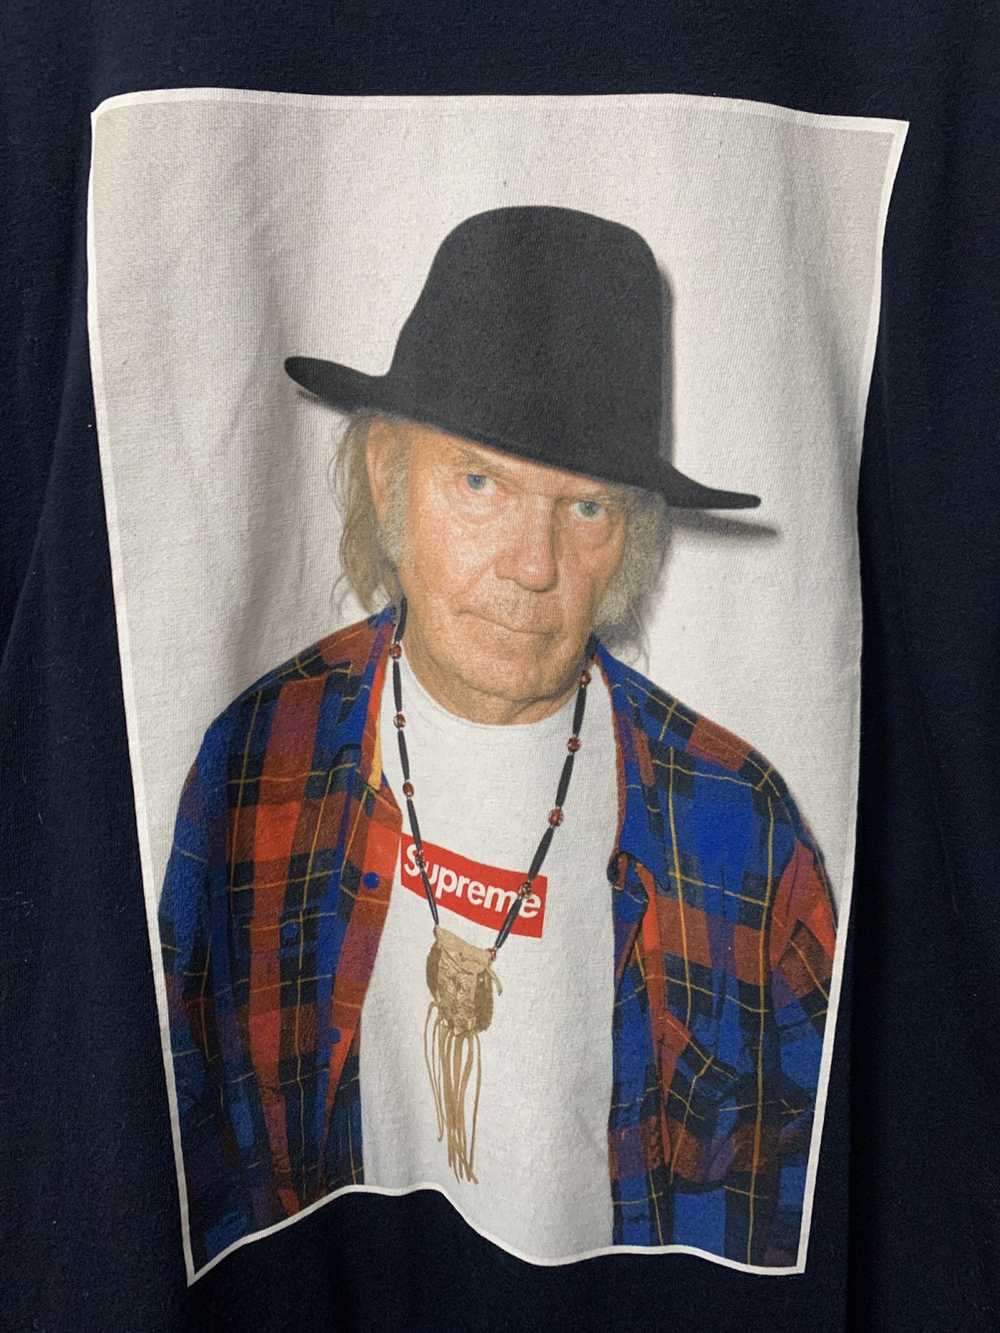 Supreme Supreme Neil Young Photo tee - image 3